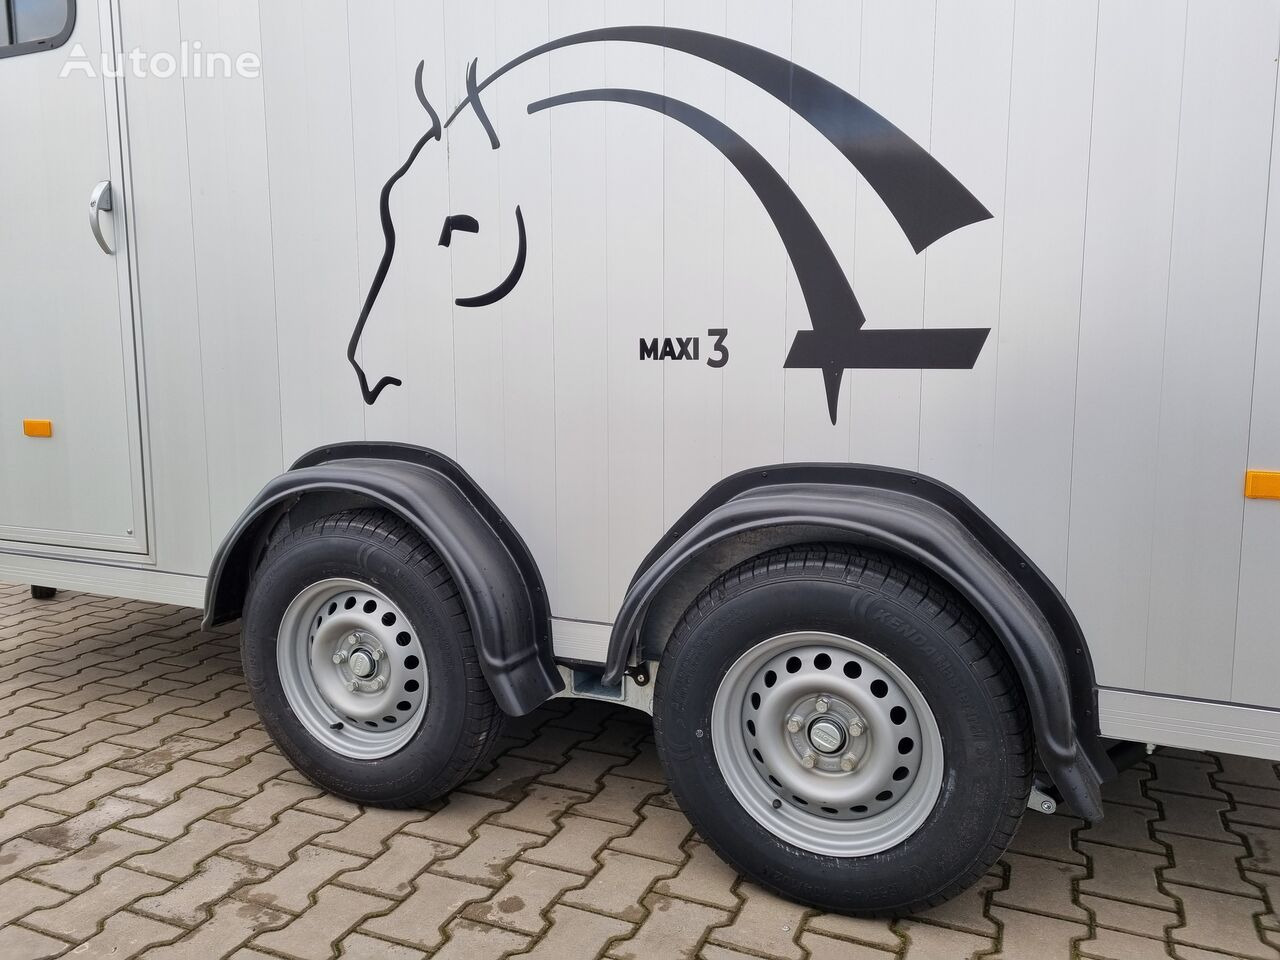 신규 말 트레일러 Cheval Liberté Maxi 3 Minimax trailer for 3 horses GVW 3500kg tack room saddle : 사진 13